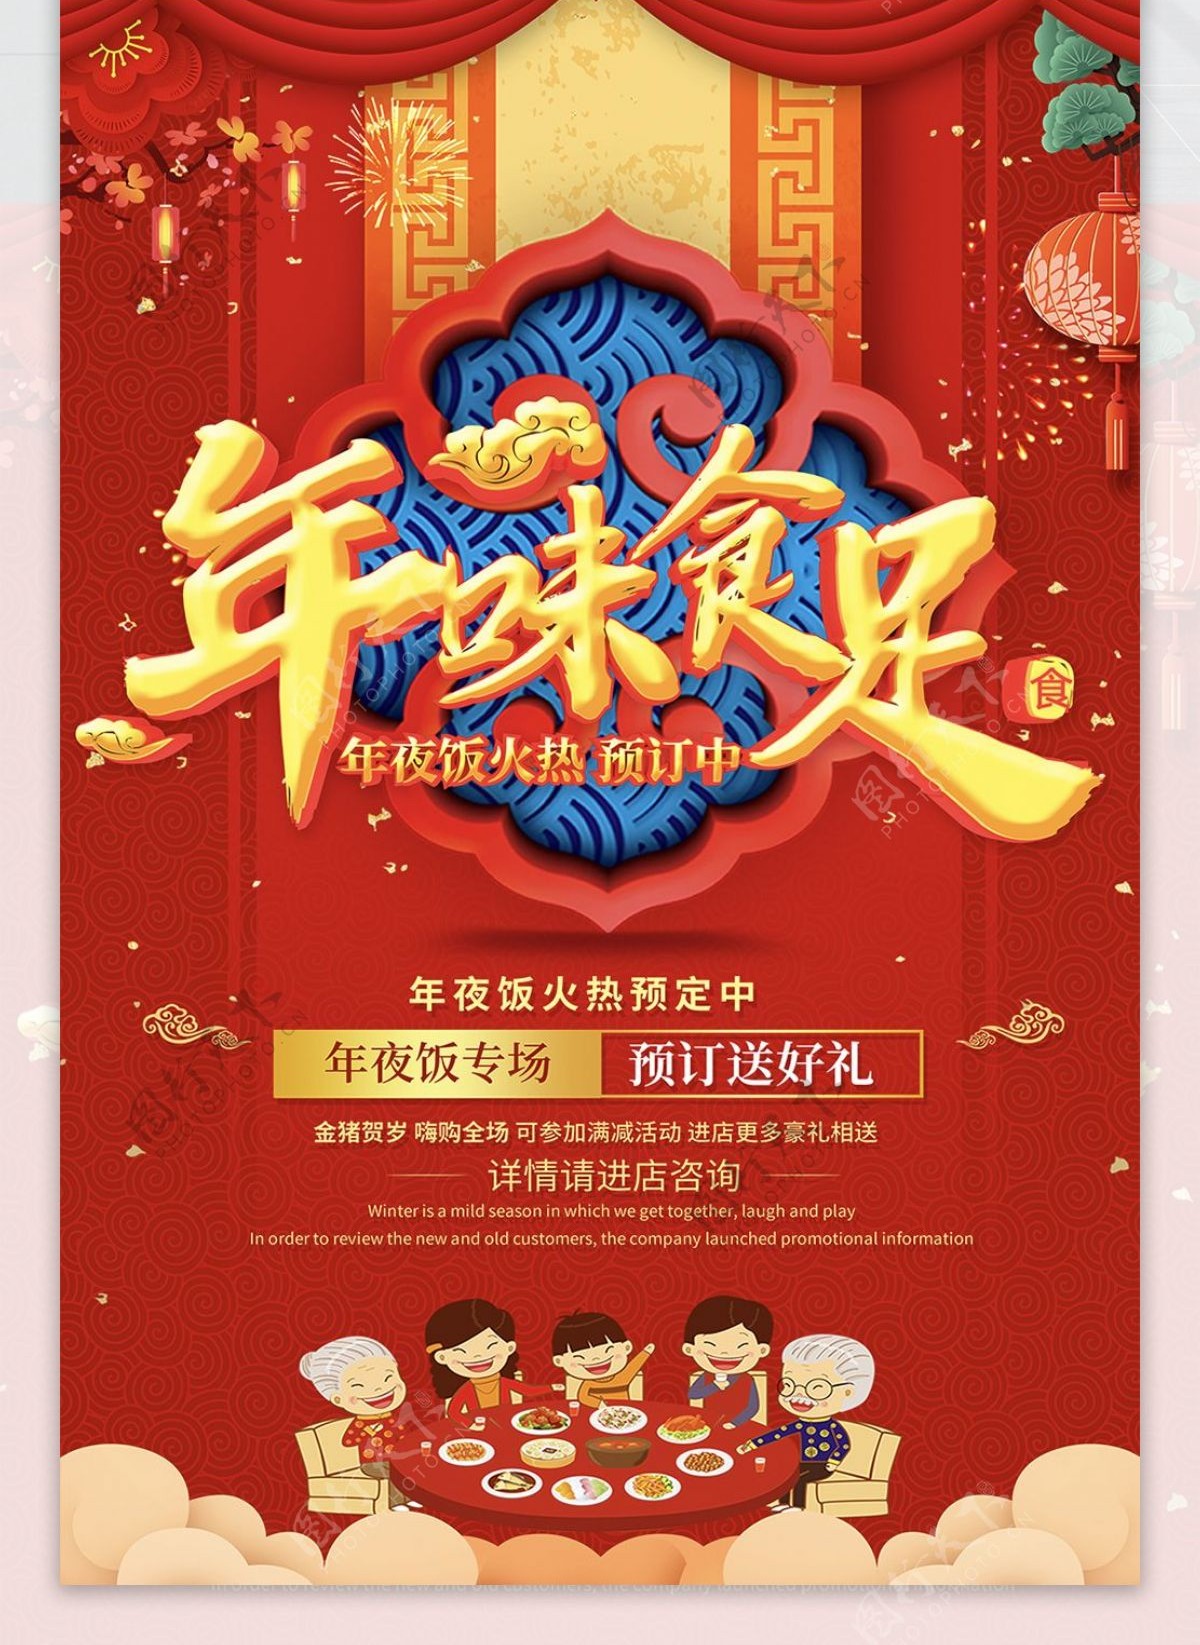 创意中国风2019年夜饭预定年夜饭海报